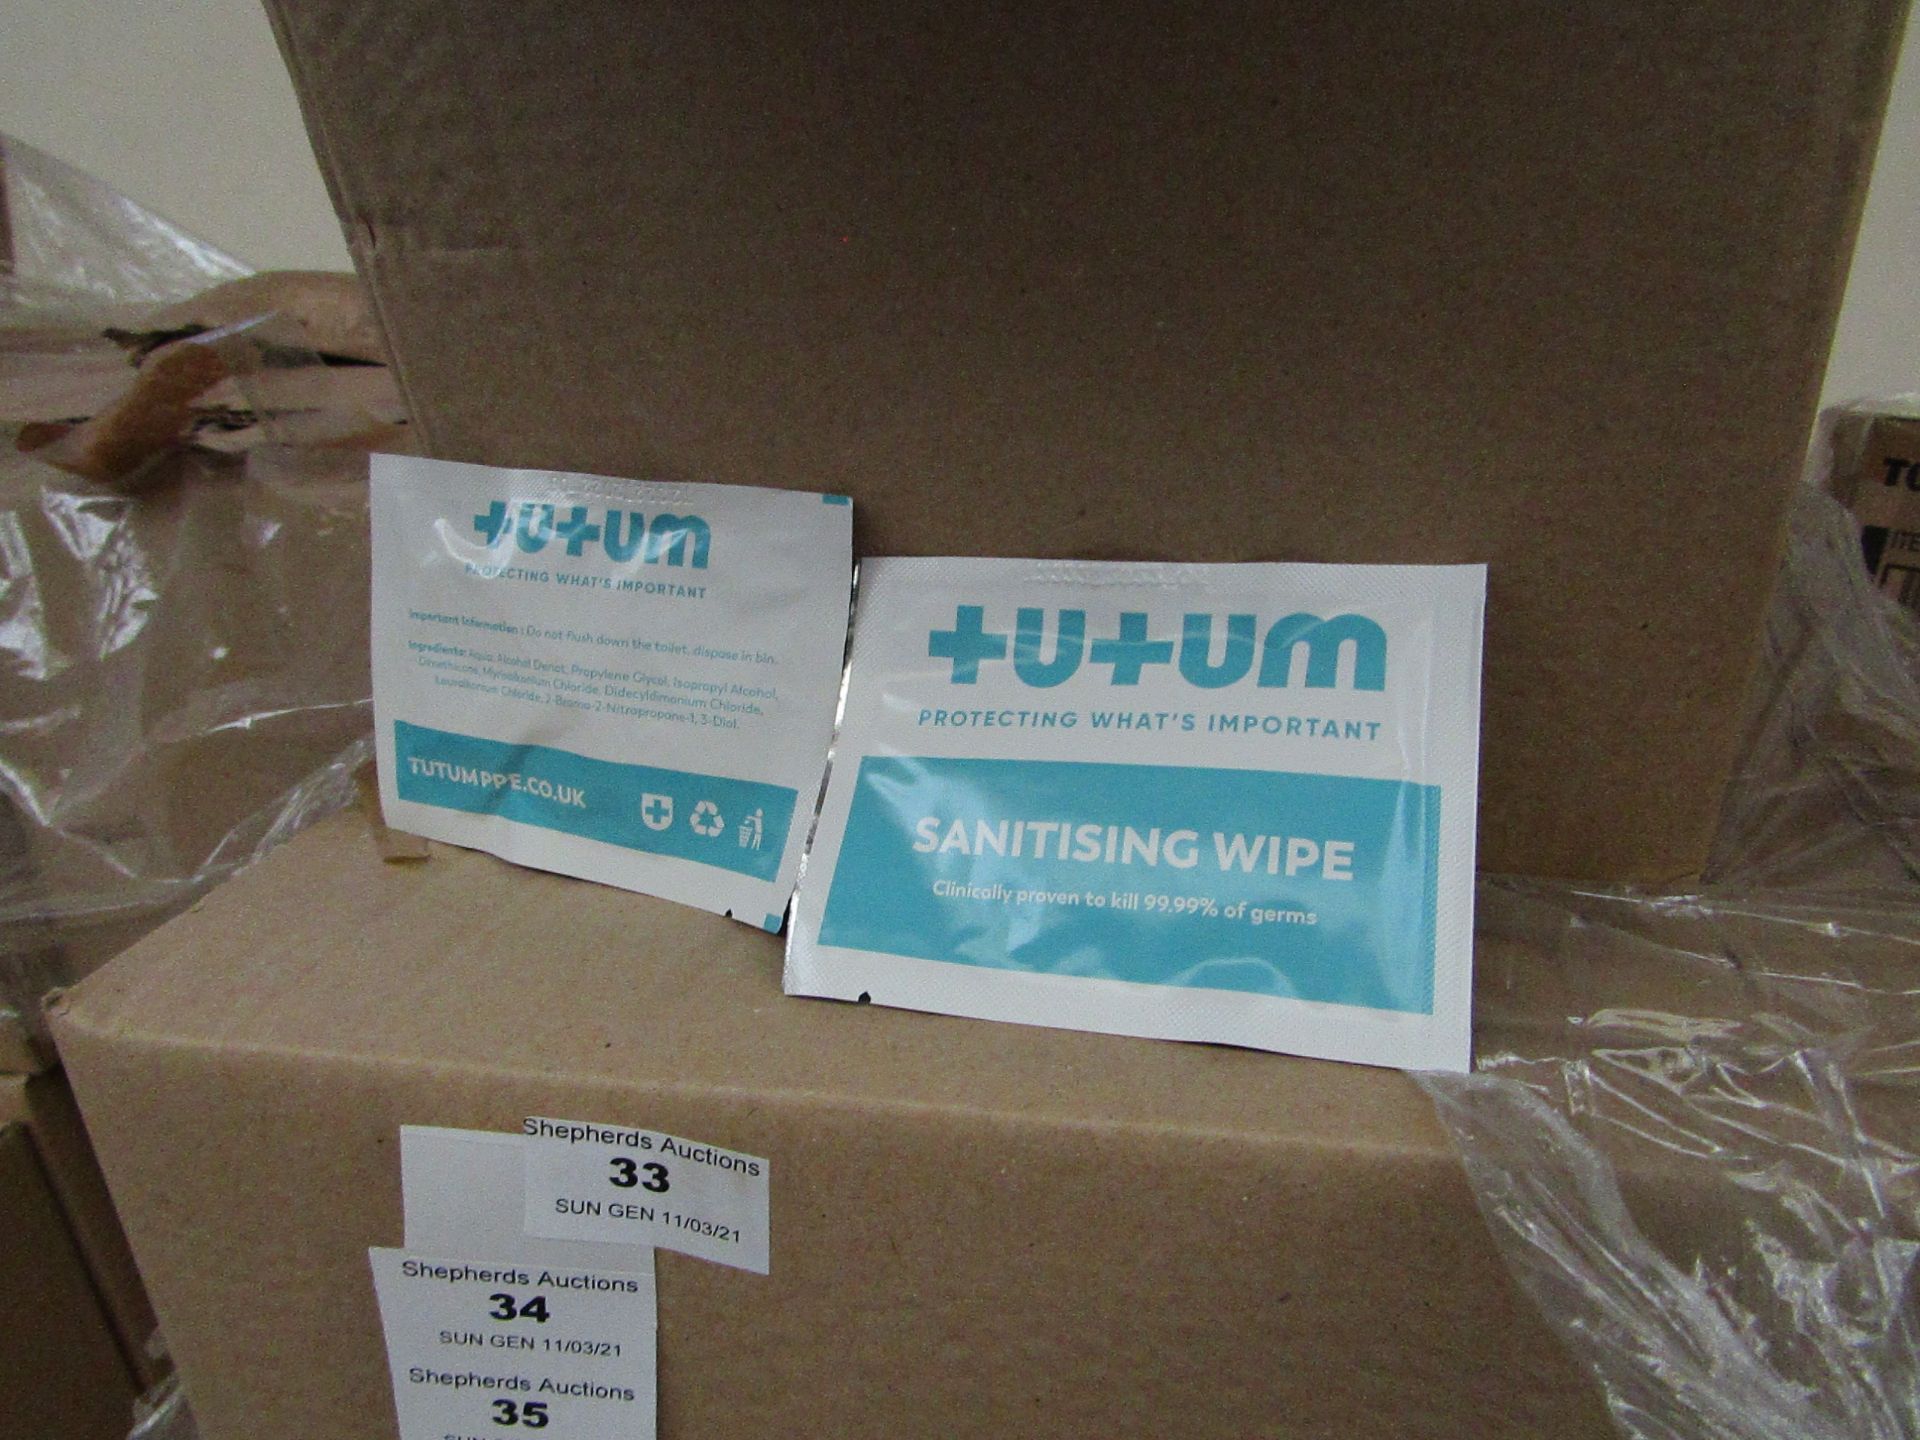 500x Sachets Tutumpee +U+UM Single Use - Sanitising Wipes - New & Boxed.